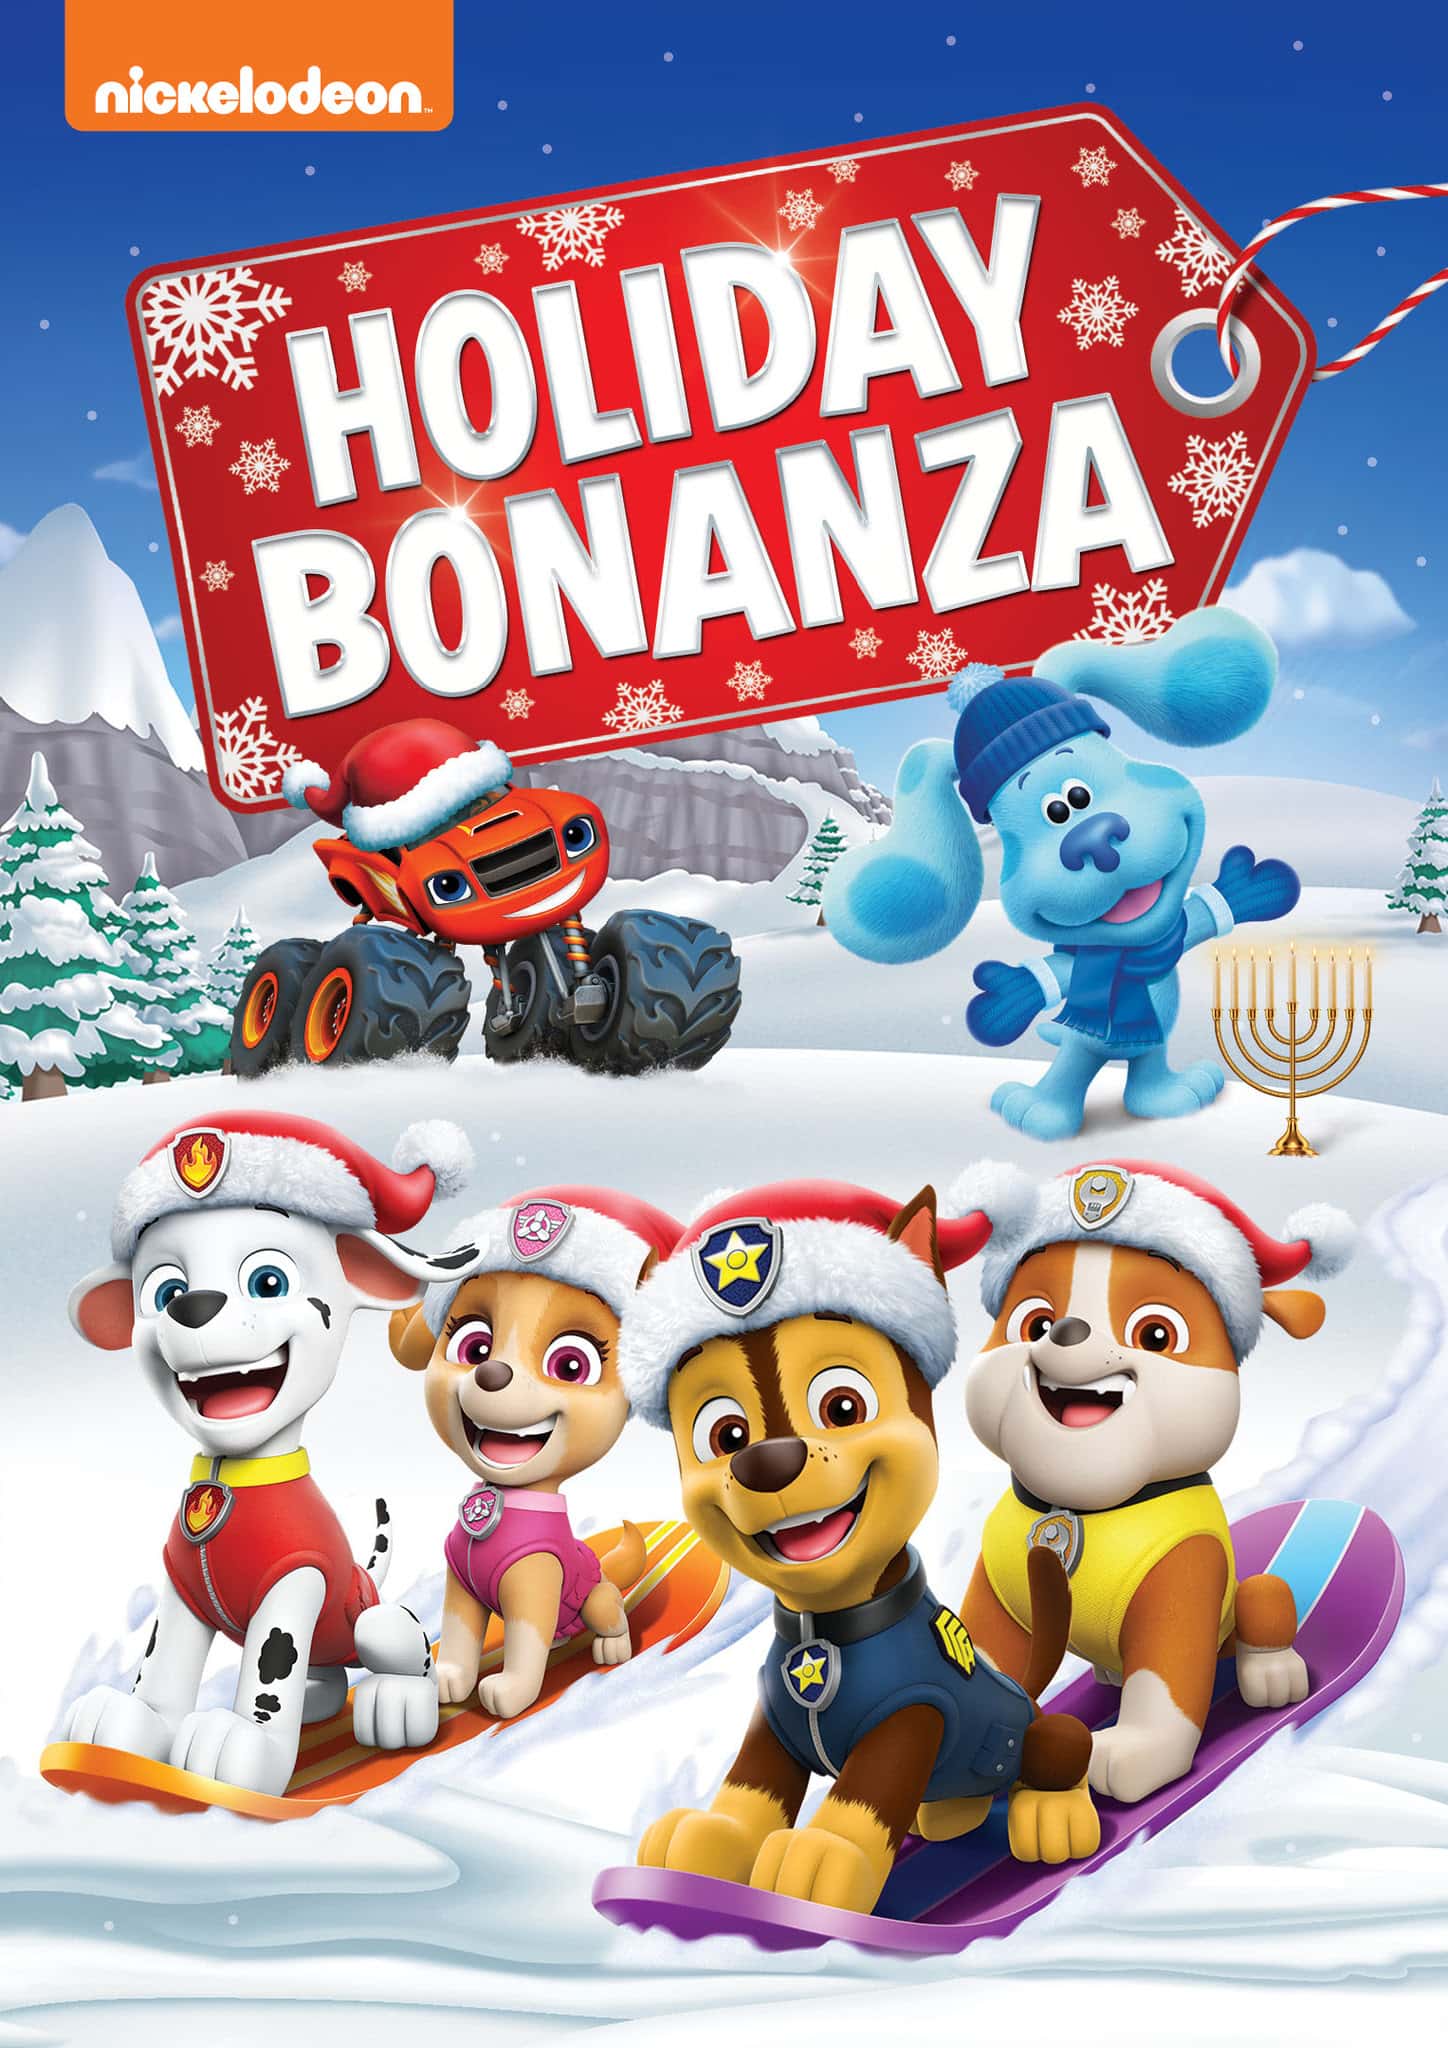 Nick Jr Holiday Bonanza Giveaway dvd